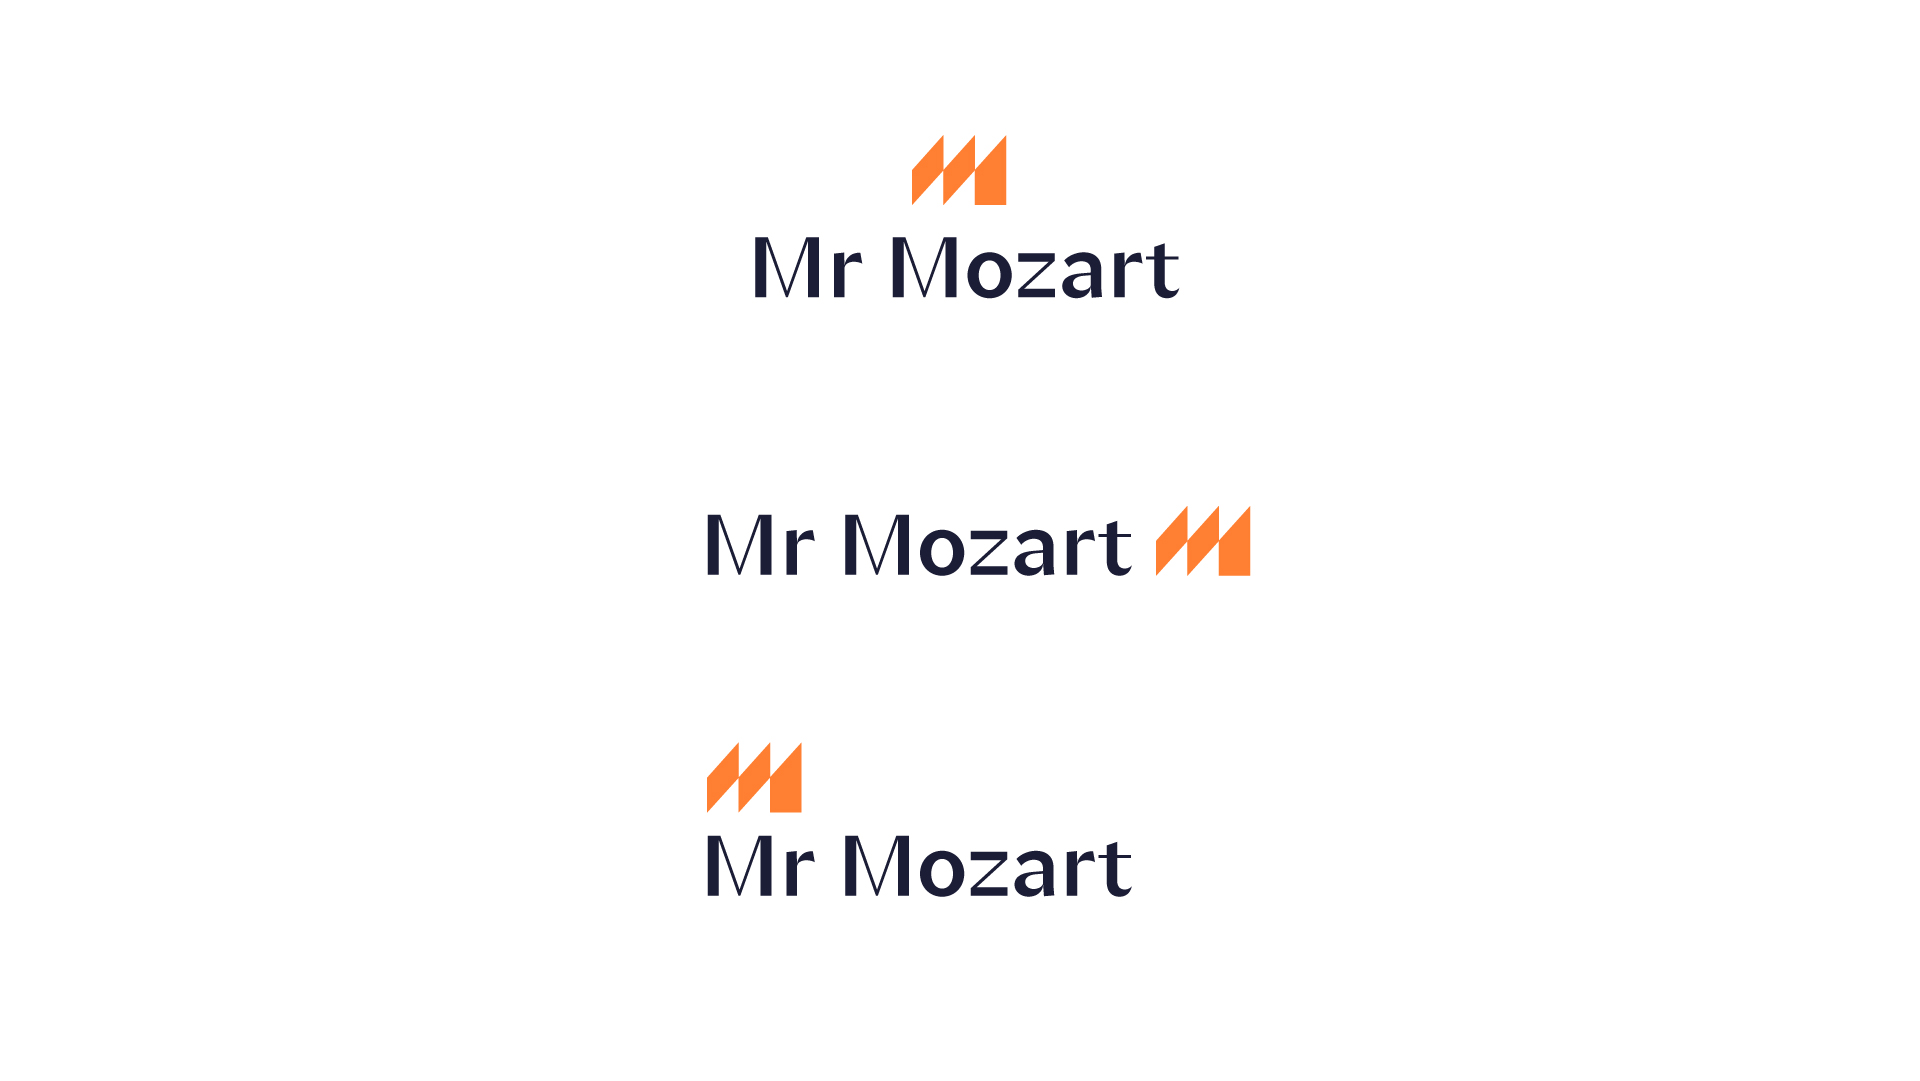 Mr mozart. Mr Mozart блоггер. Логотипы ютуба старый по годам.